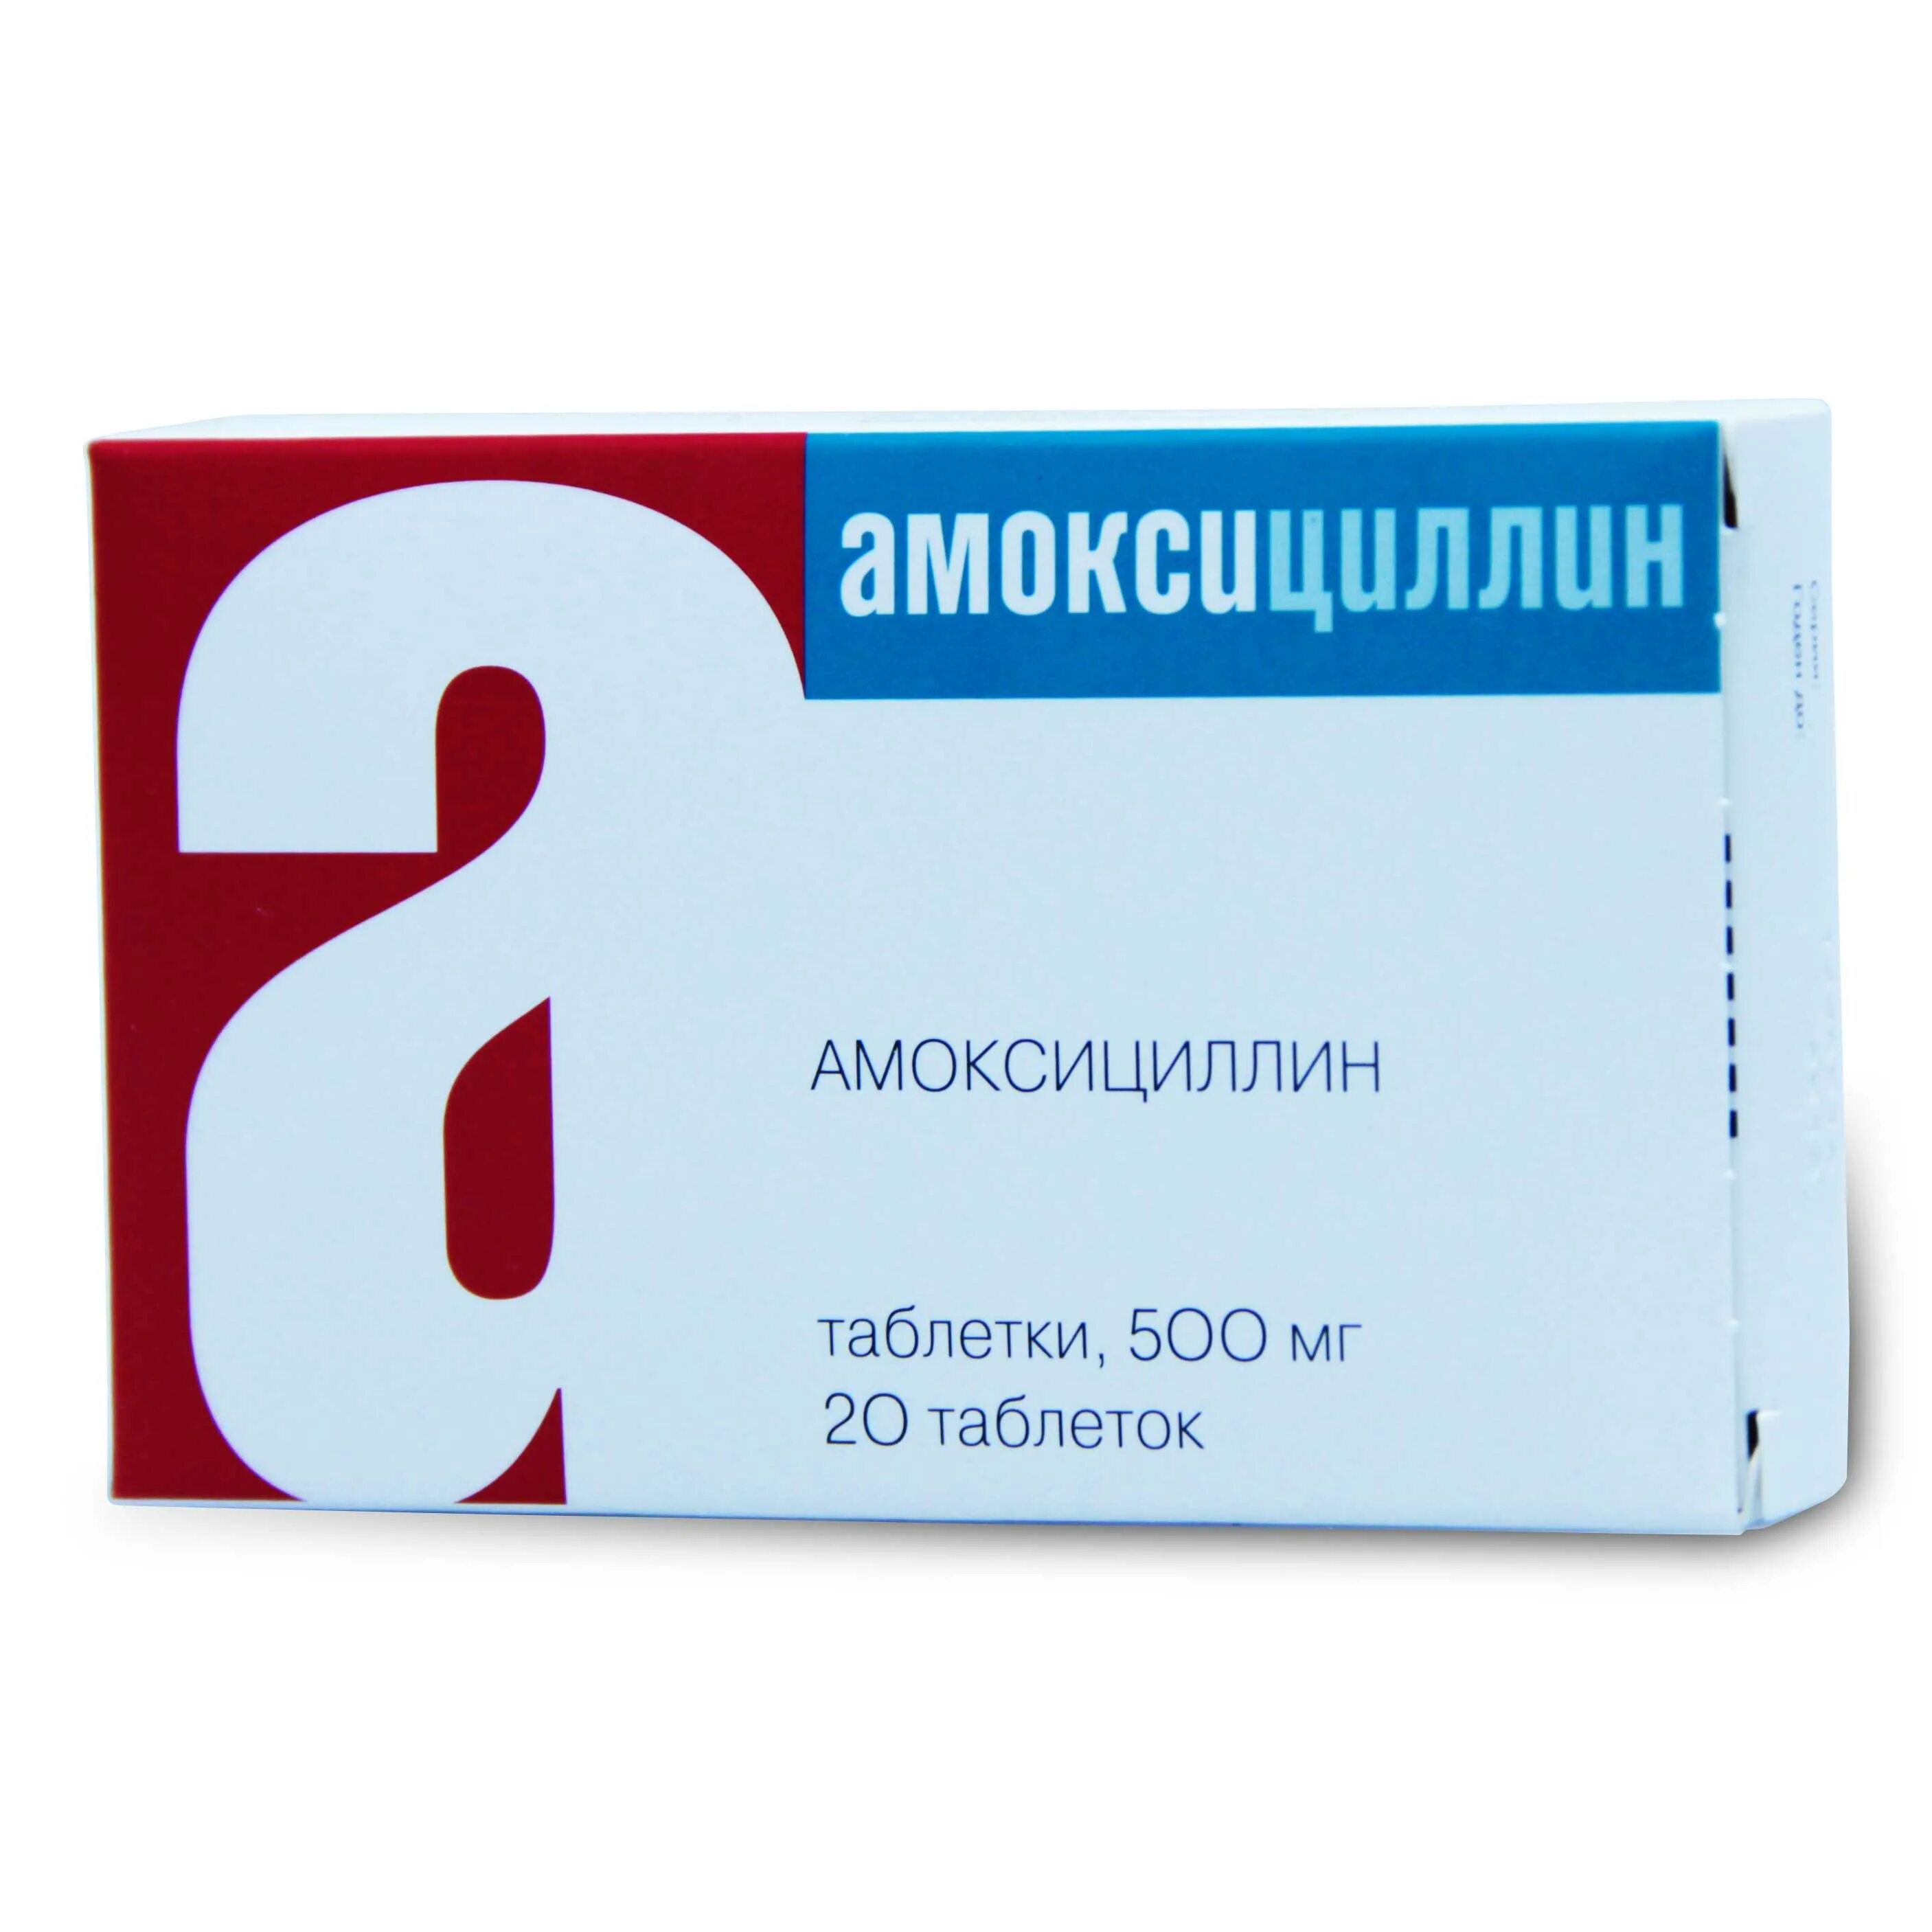 Амоксициллин это антибиотик. Амоксициллин 500 мг. Амоксициллин таблетки 500 мг. Антибиотик таблетки амоксициллин 500 мг. Амоксициллин табл. 500мг n10 (Барнаульский завод медпрепаратов).